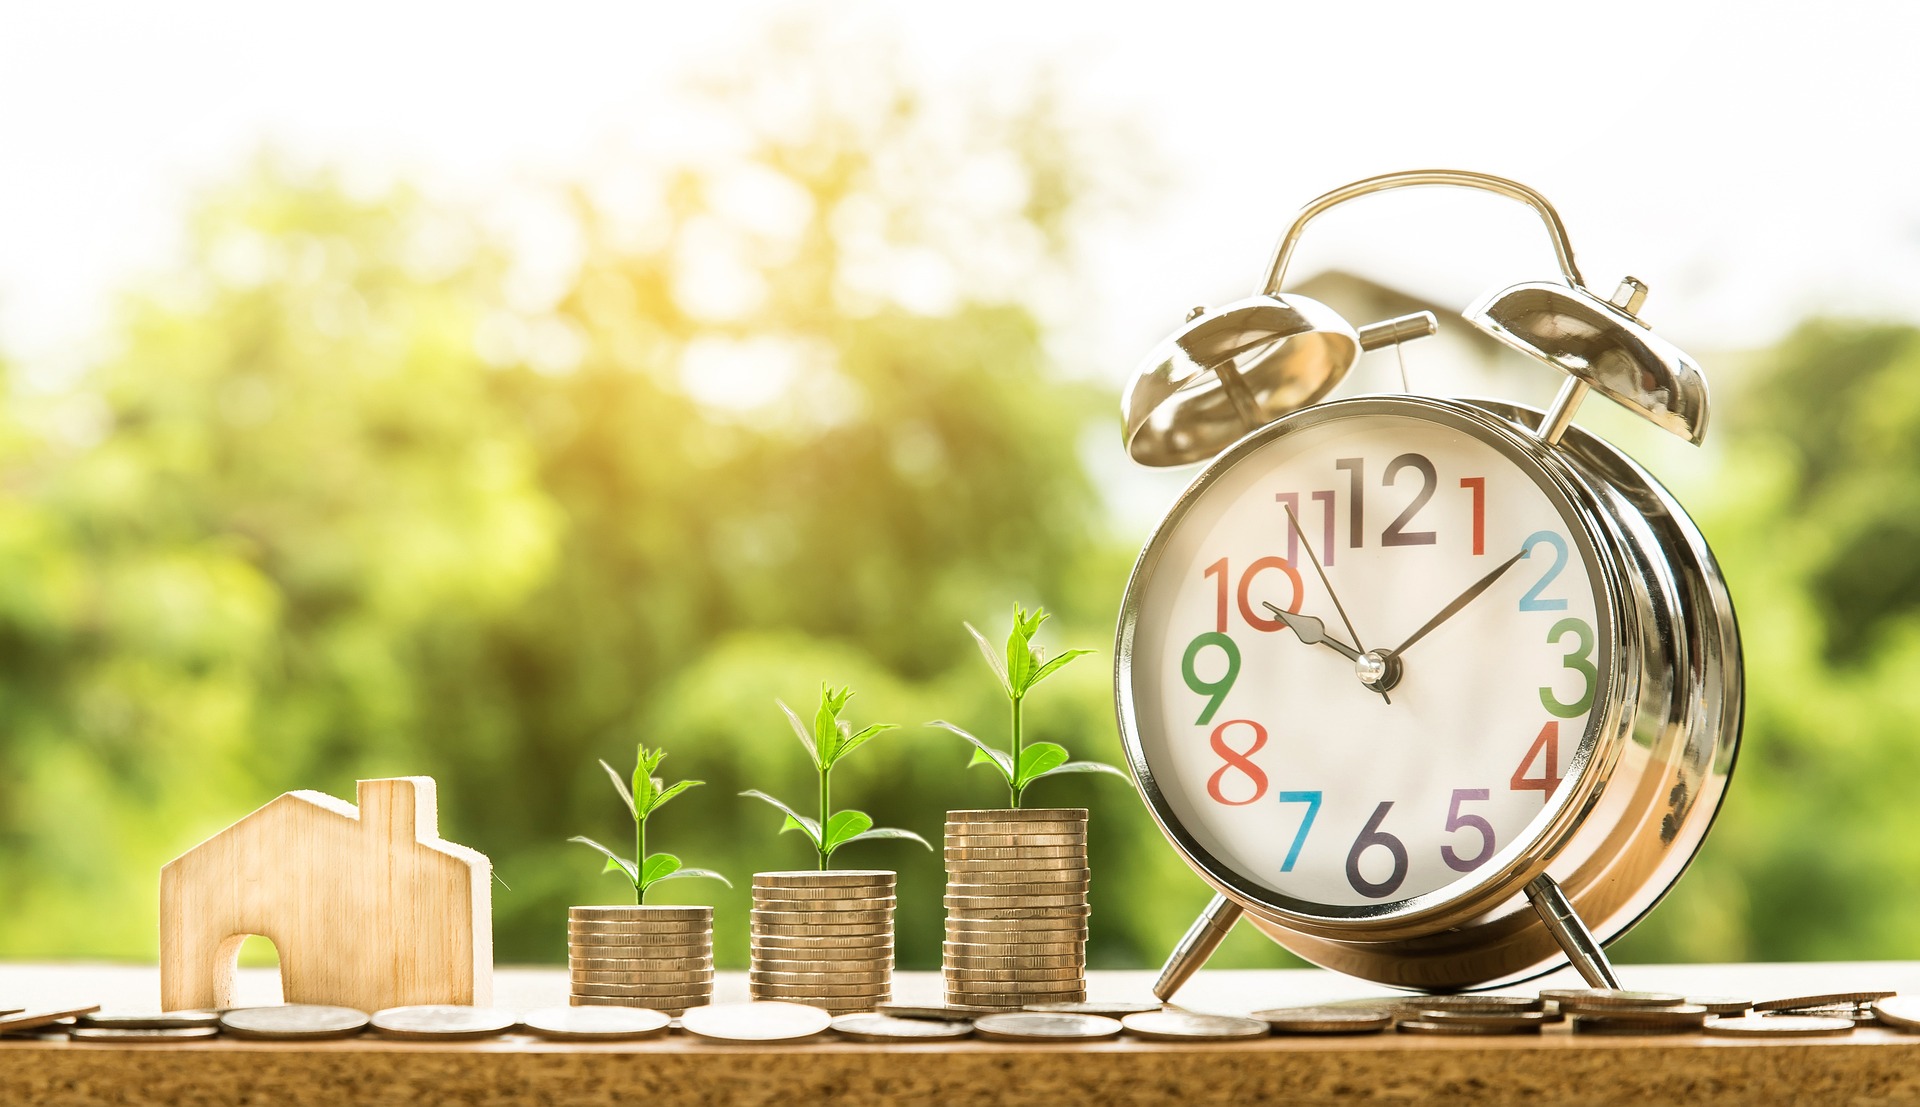 Ušetřete peníze ve své domácnosti: 5 praktických tipů na snížení výdajů a zvýšení úspor